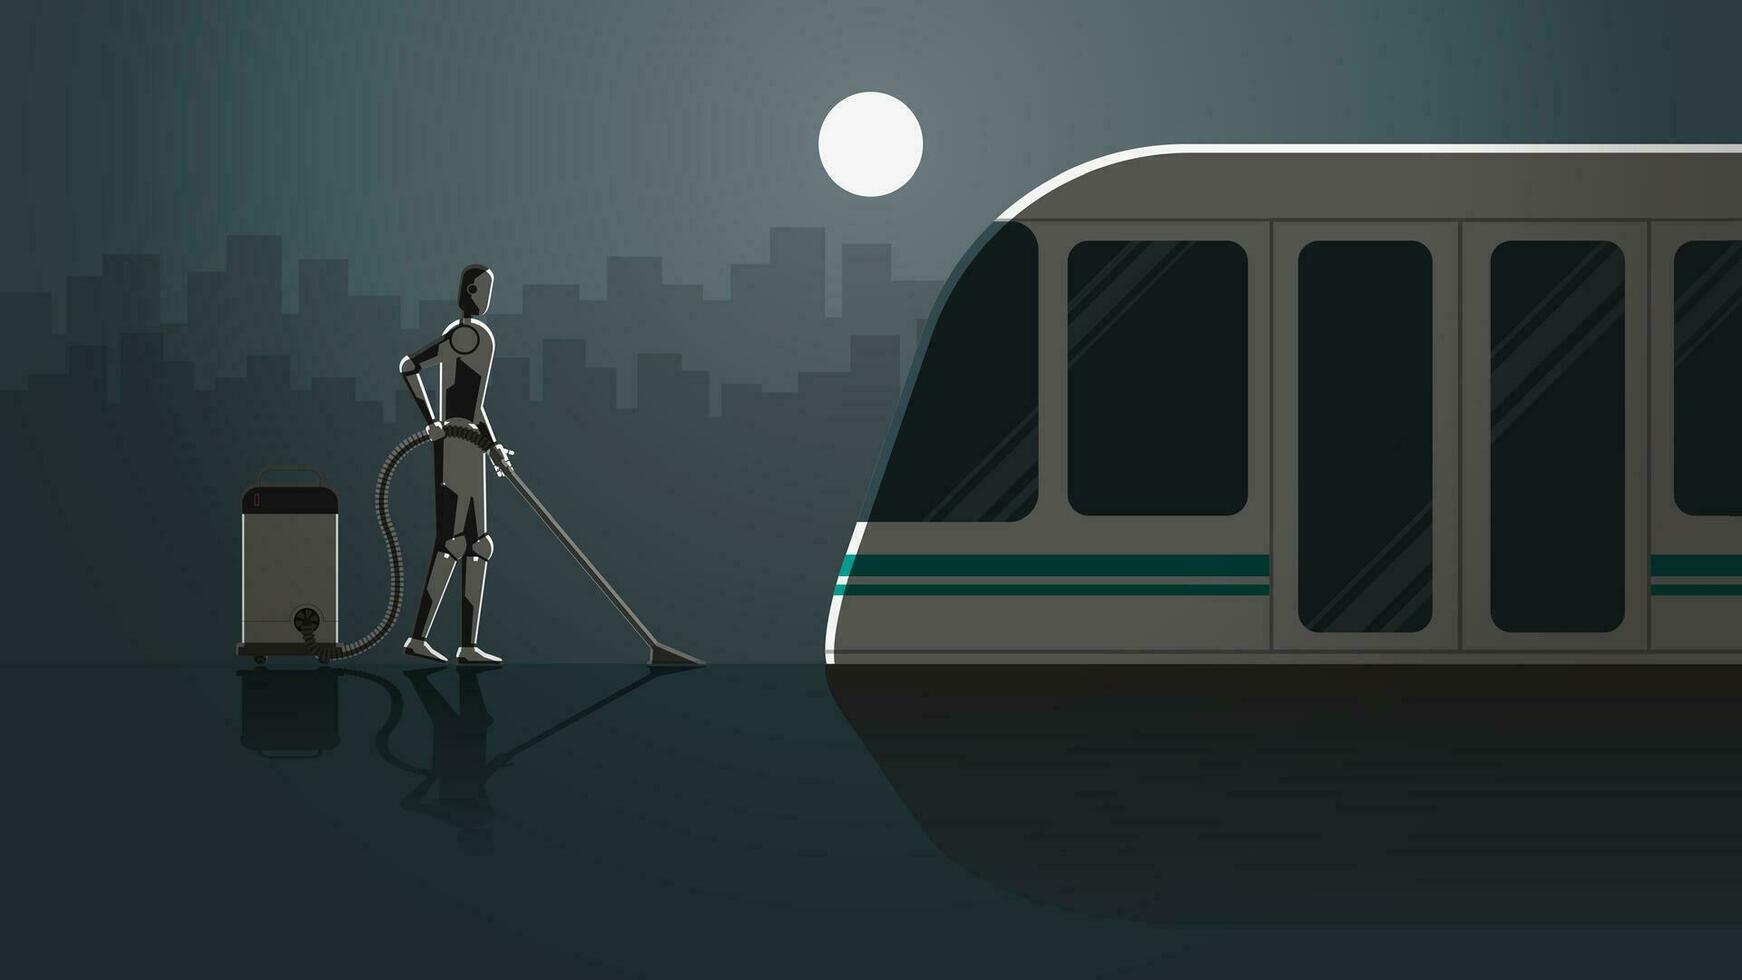 robot travail dans train station Plate-forme pour 24 heures dans le foncé et plein clair de lune sans pour autant personnes. vecteur